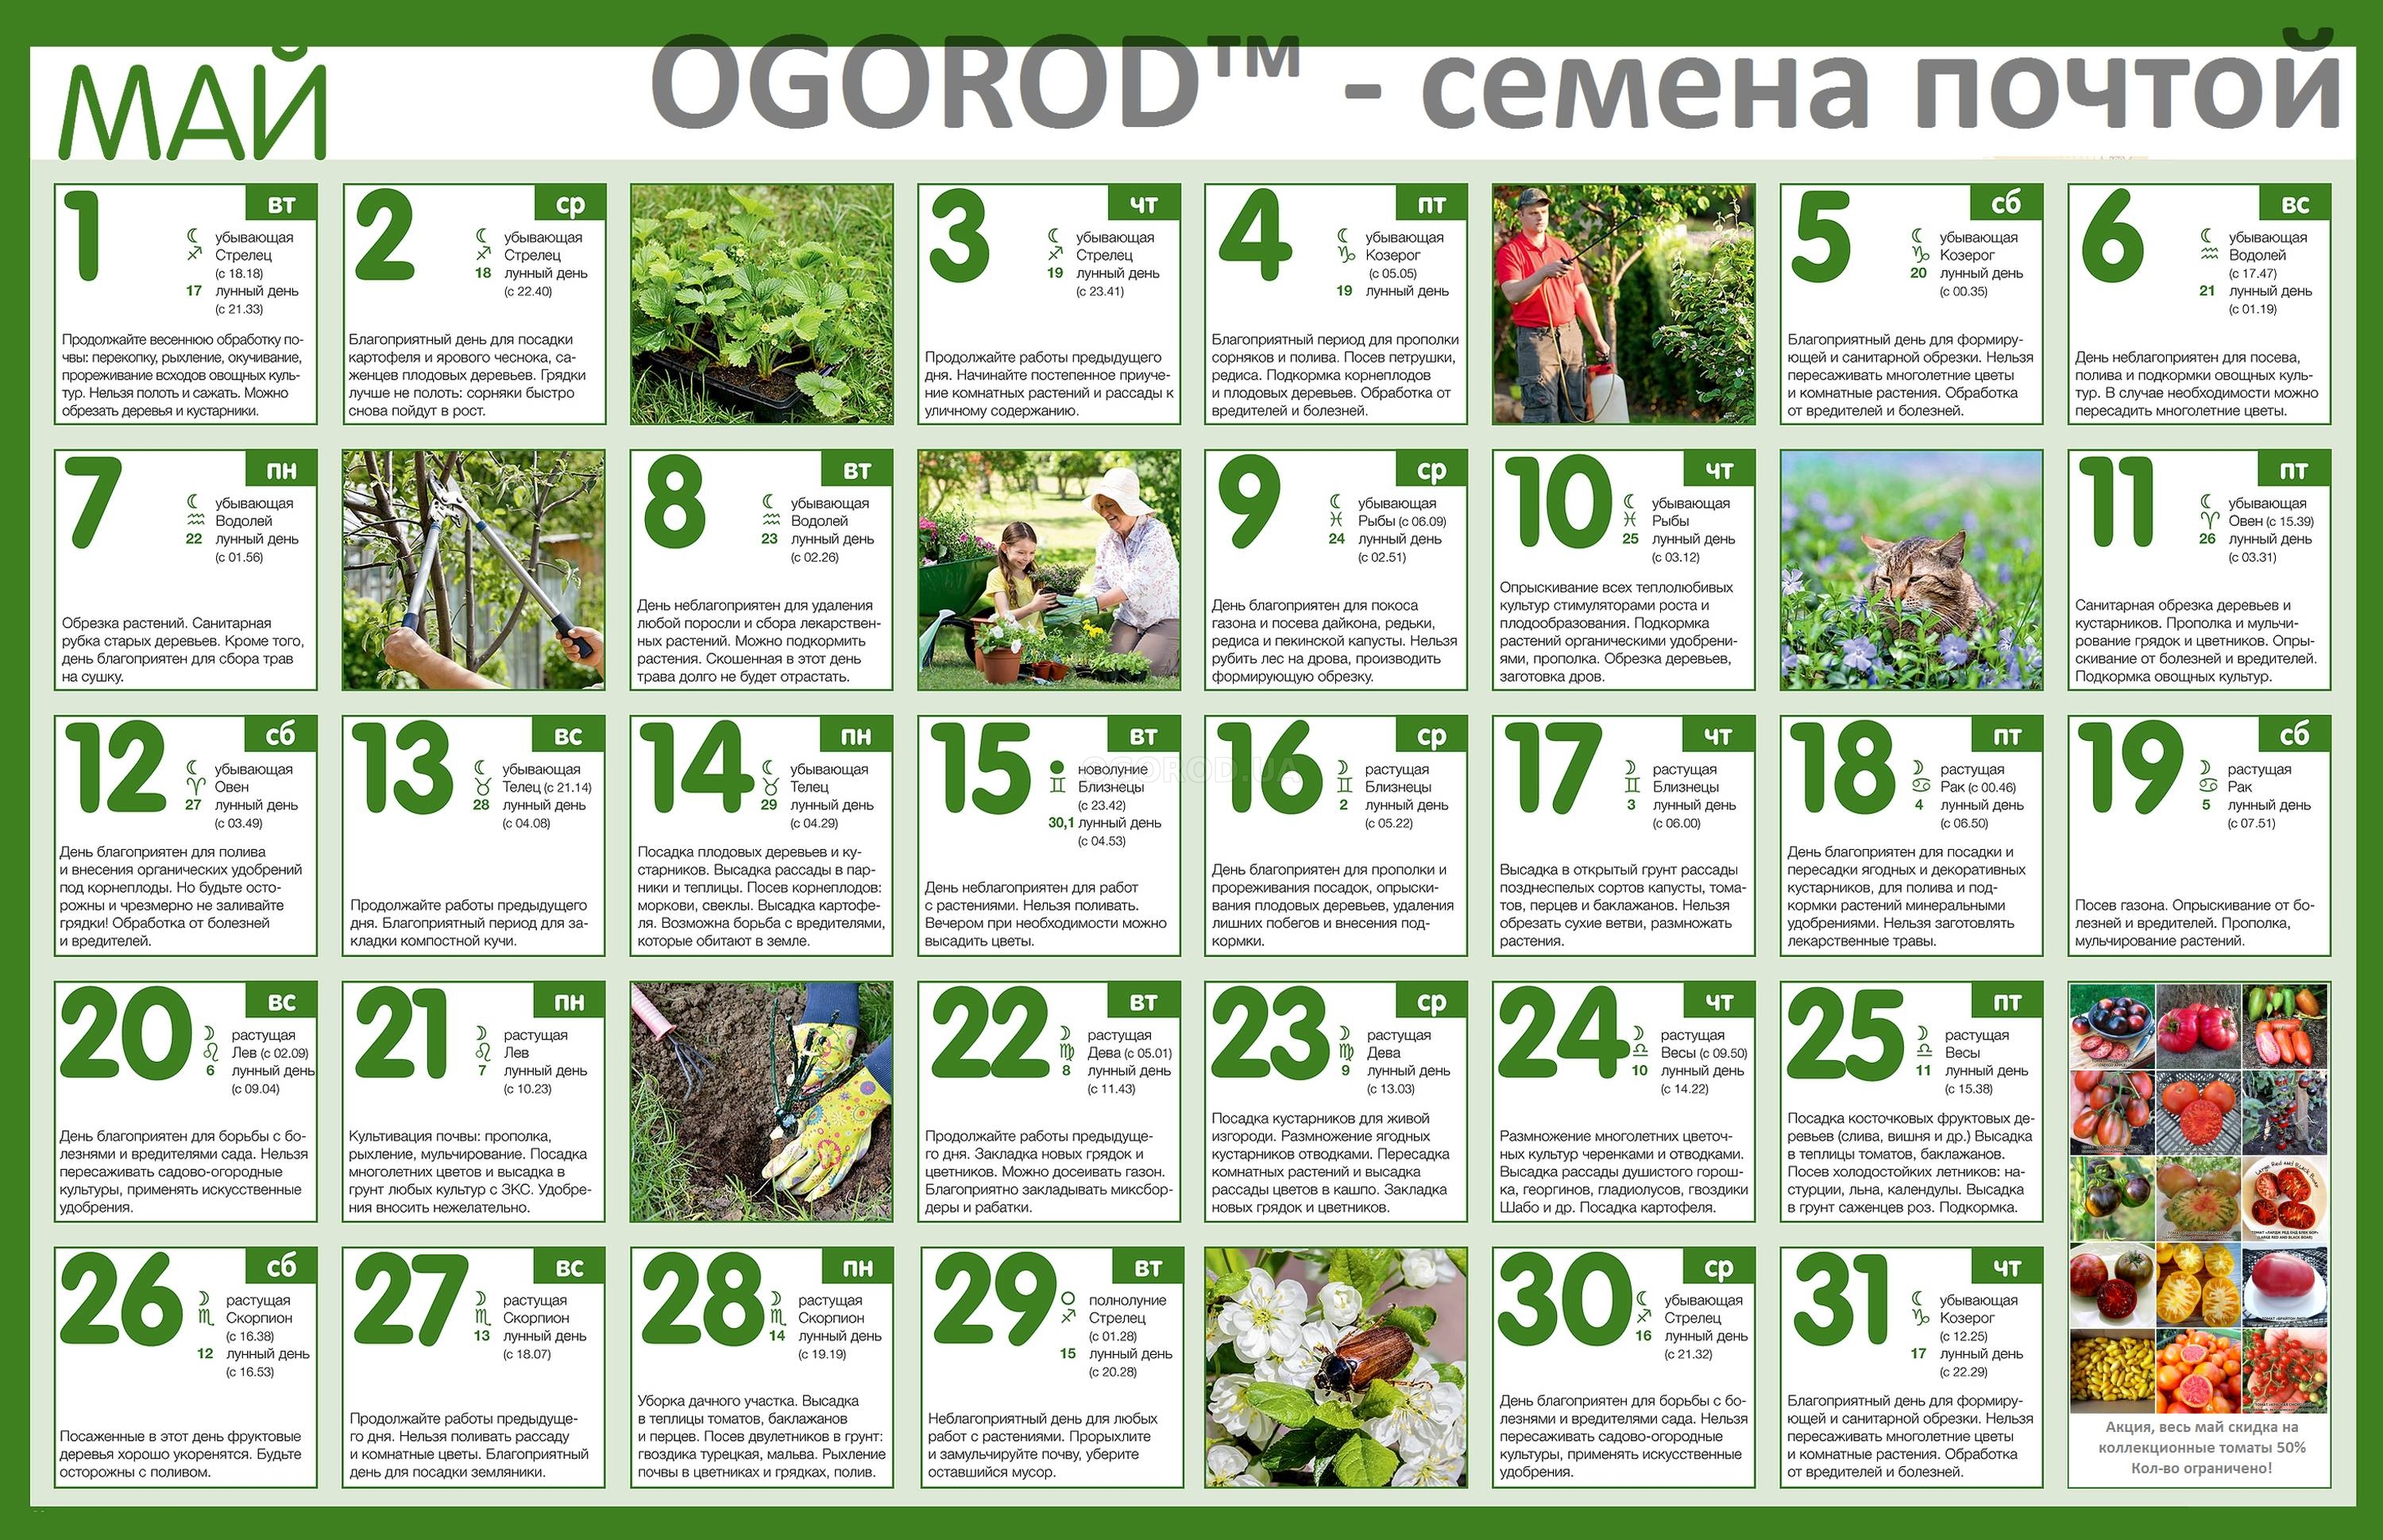 Огородный календарь на май 2018